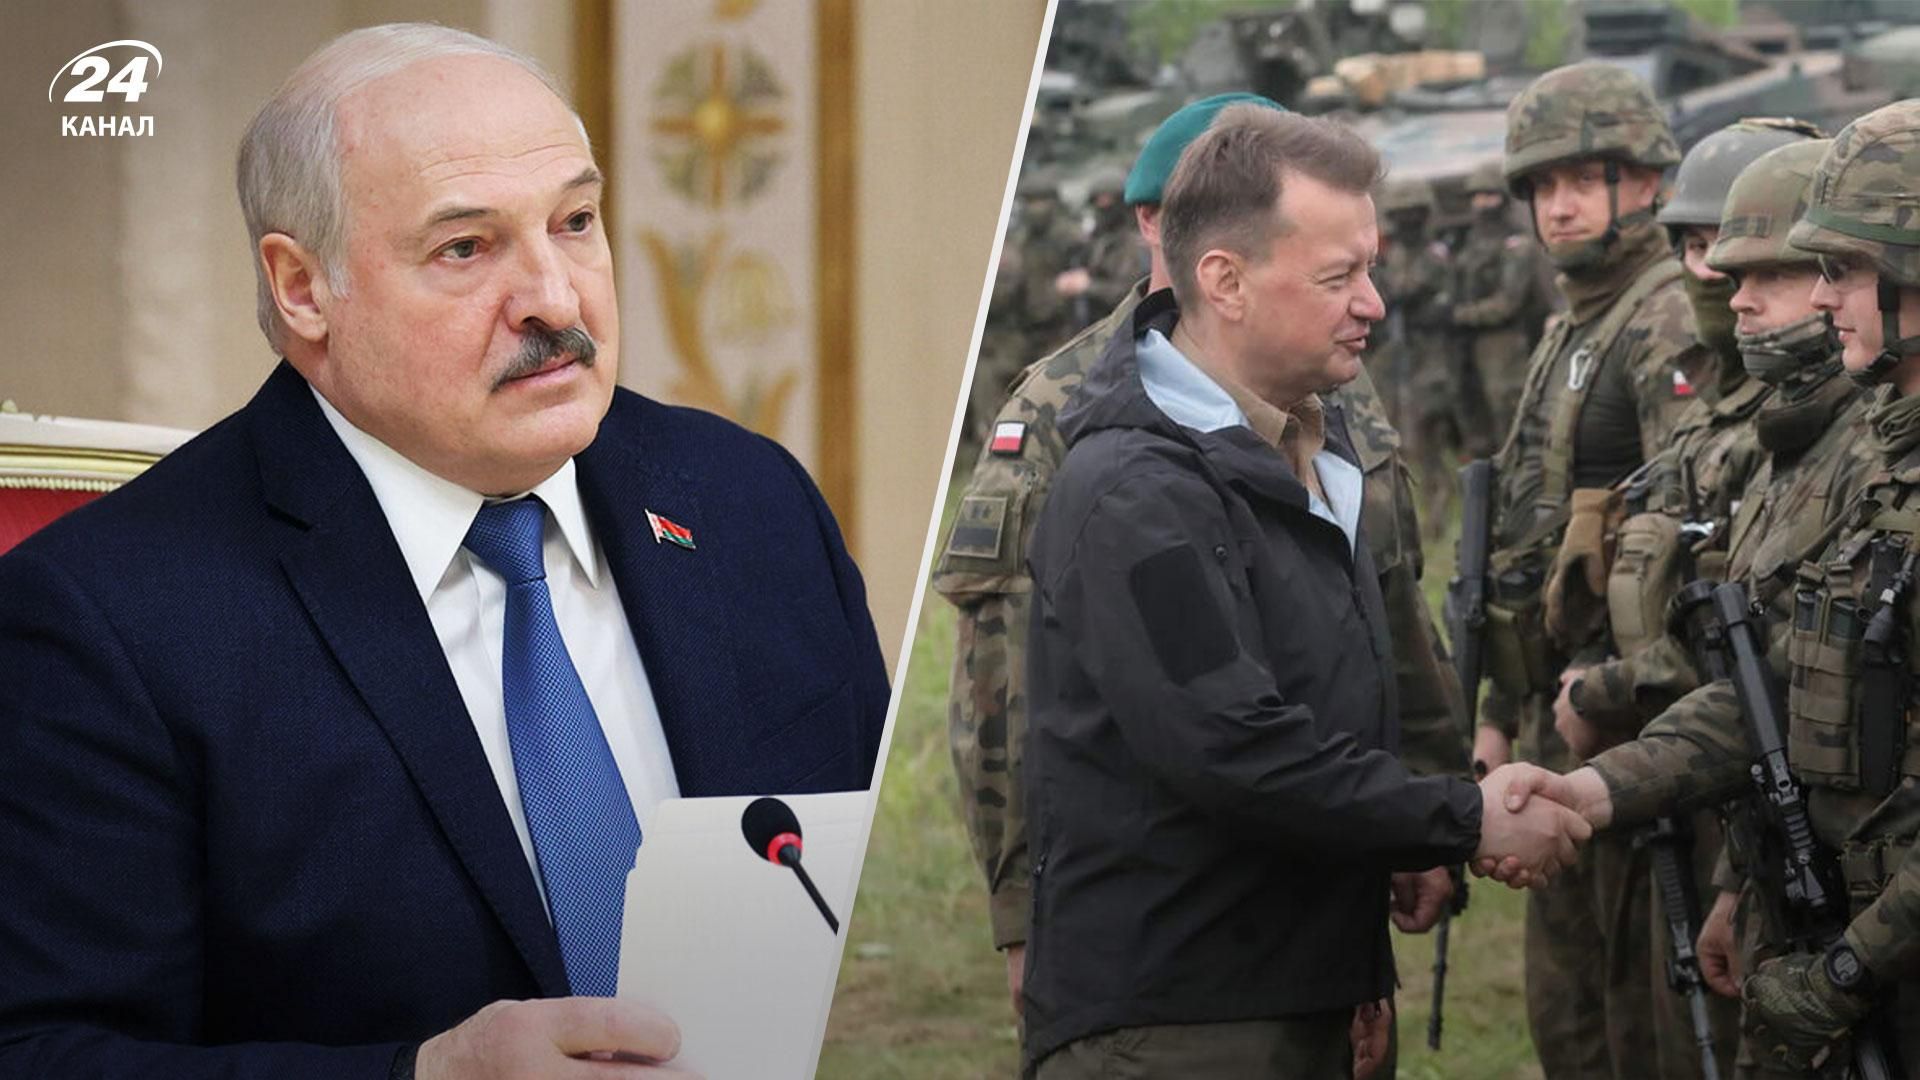 Режим Лукашенко продолжает атаковать границу с Польшей, используя мигрантов